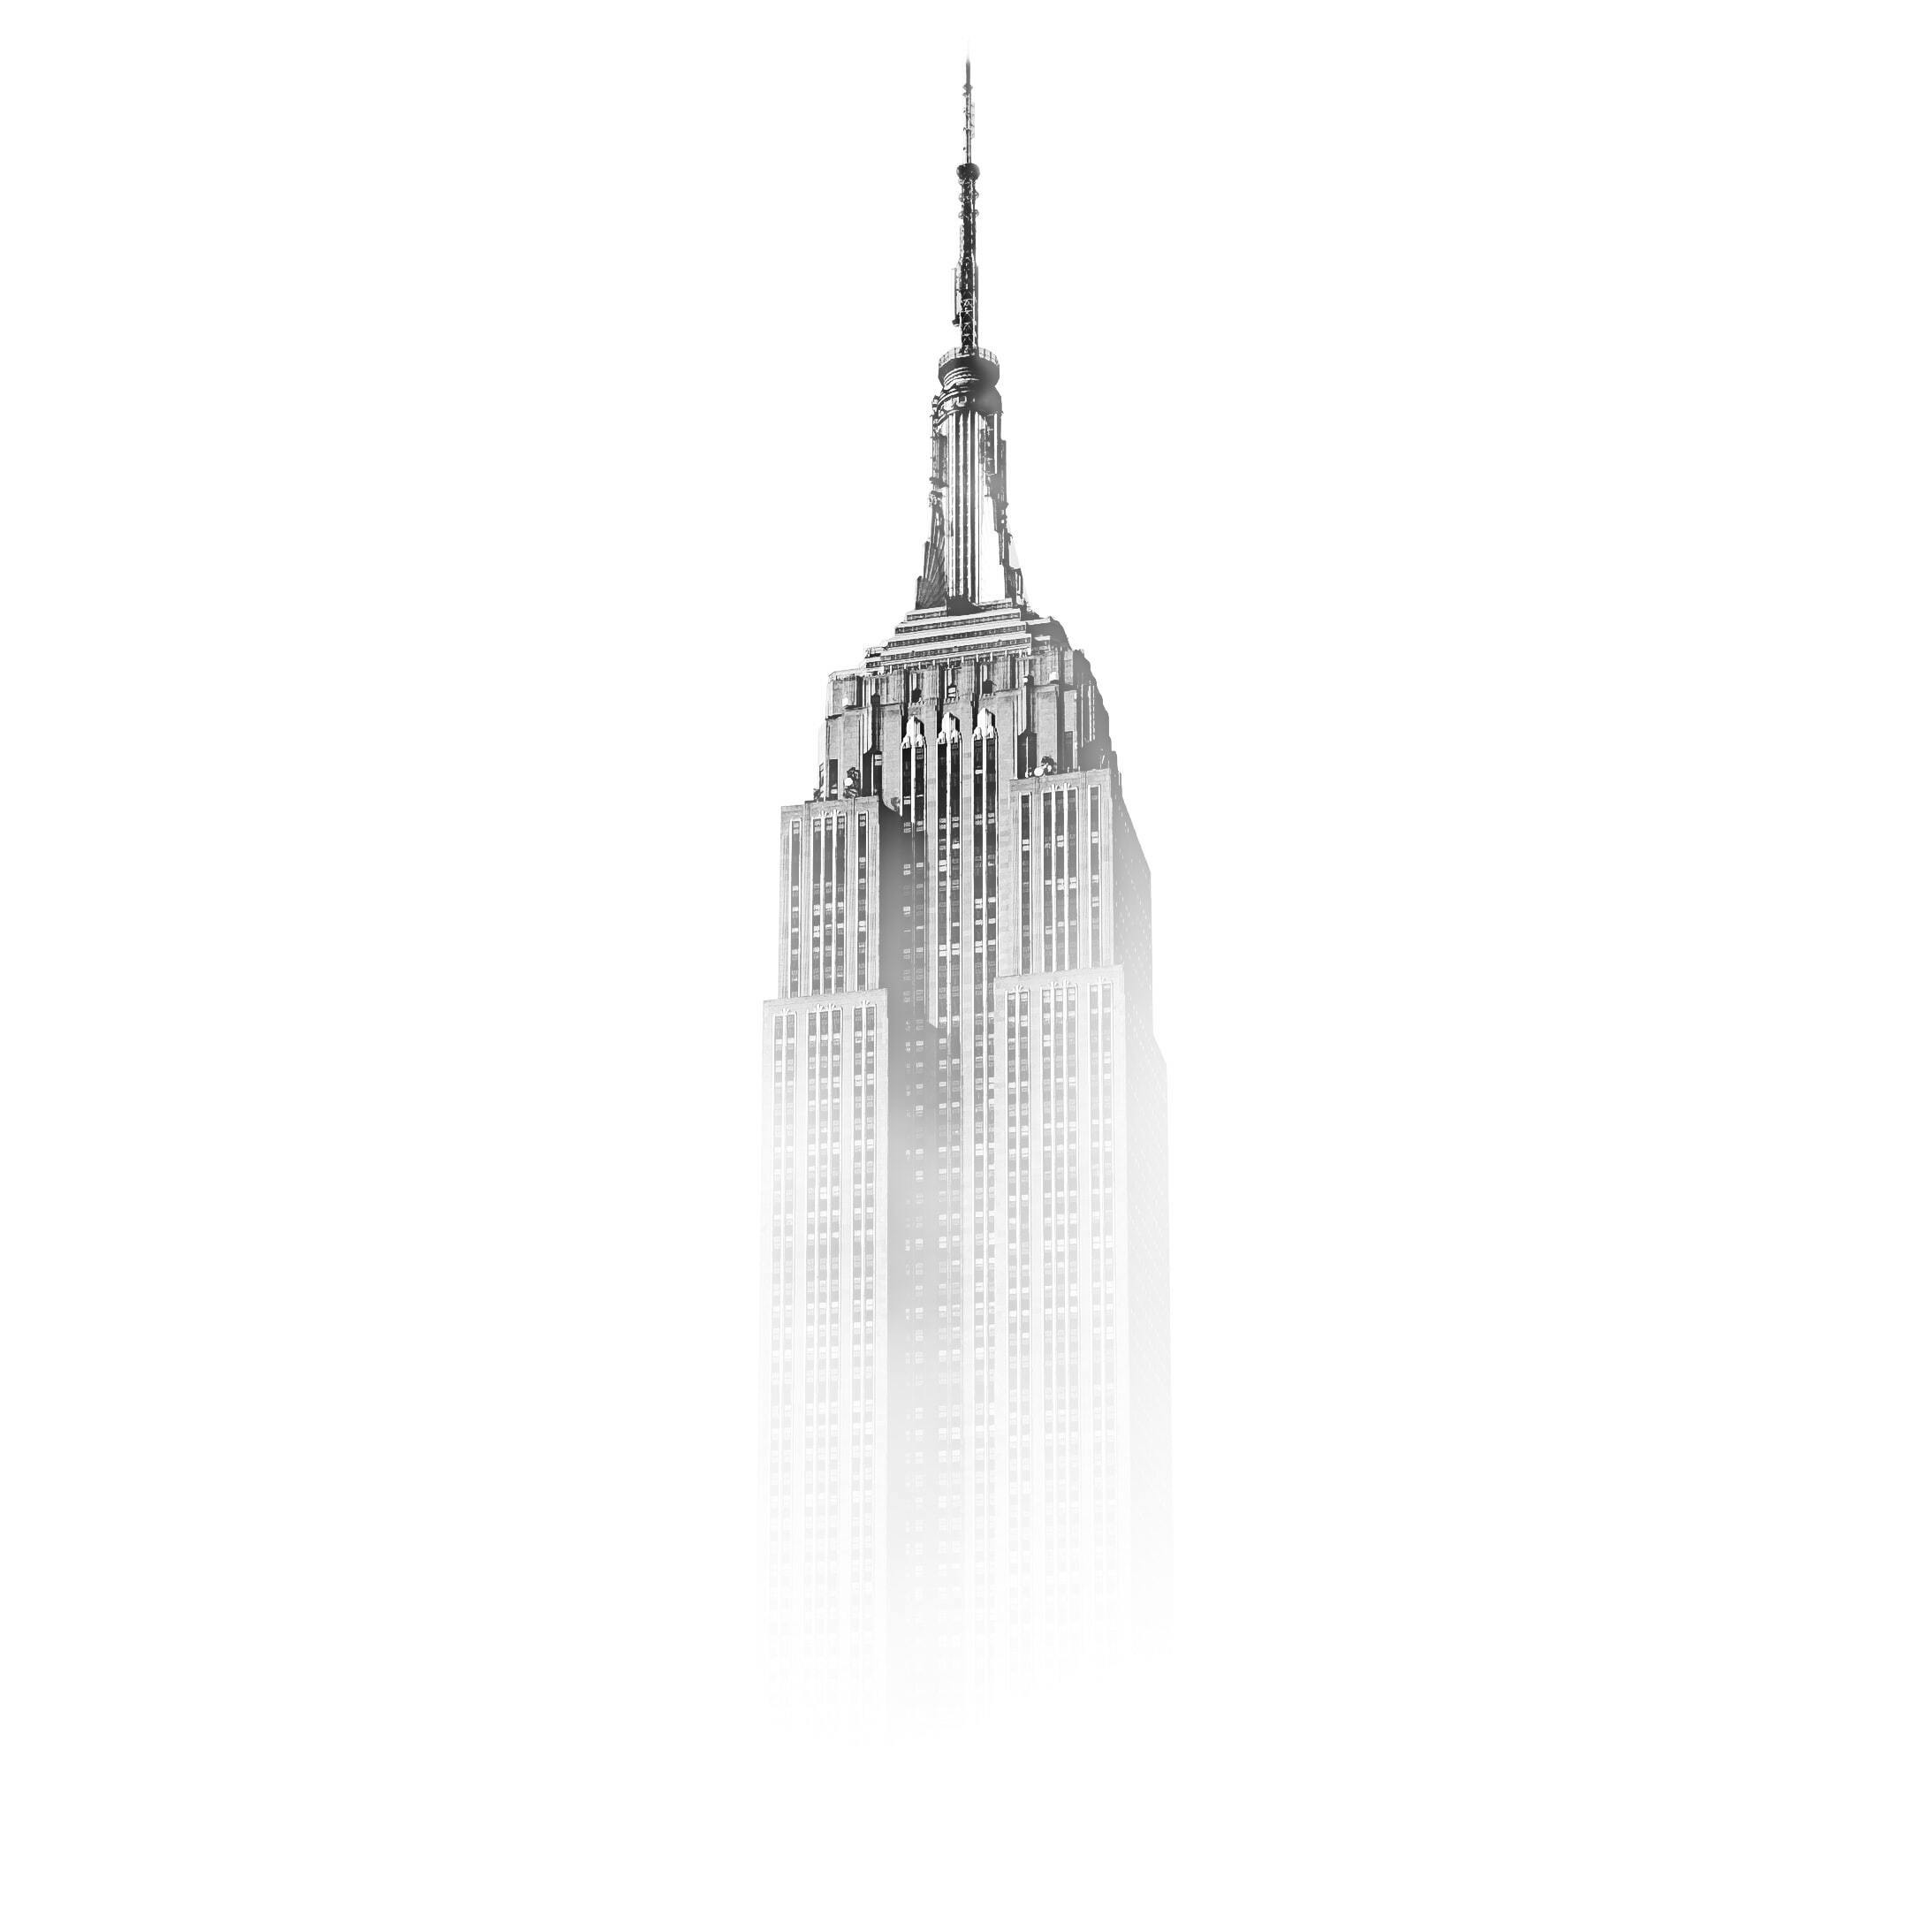 edificio Empire State retocado con Photoshop